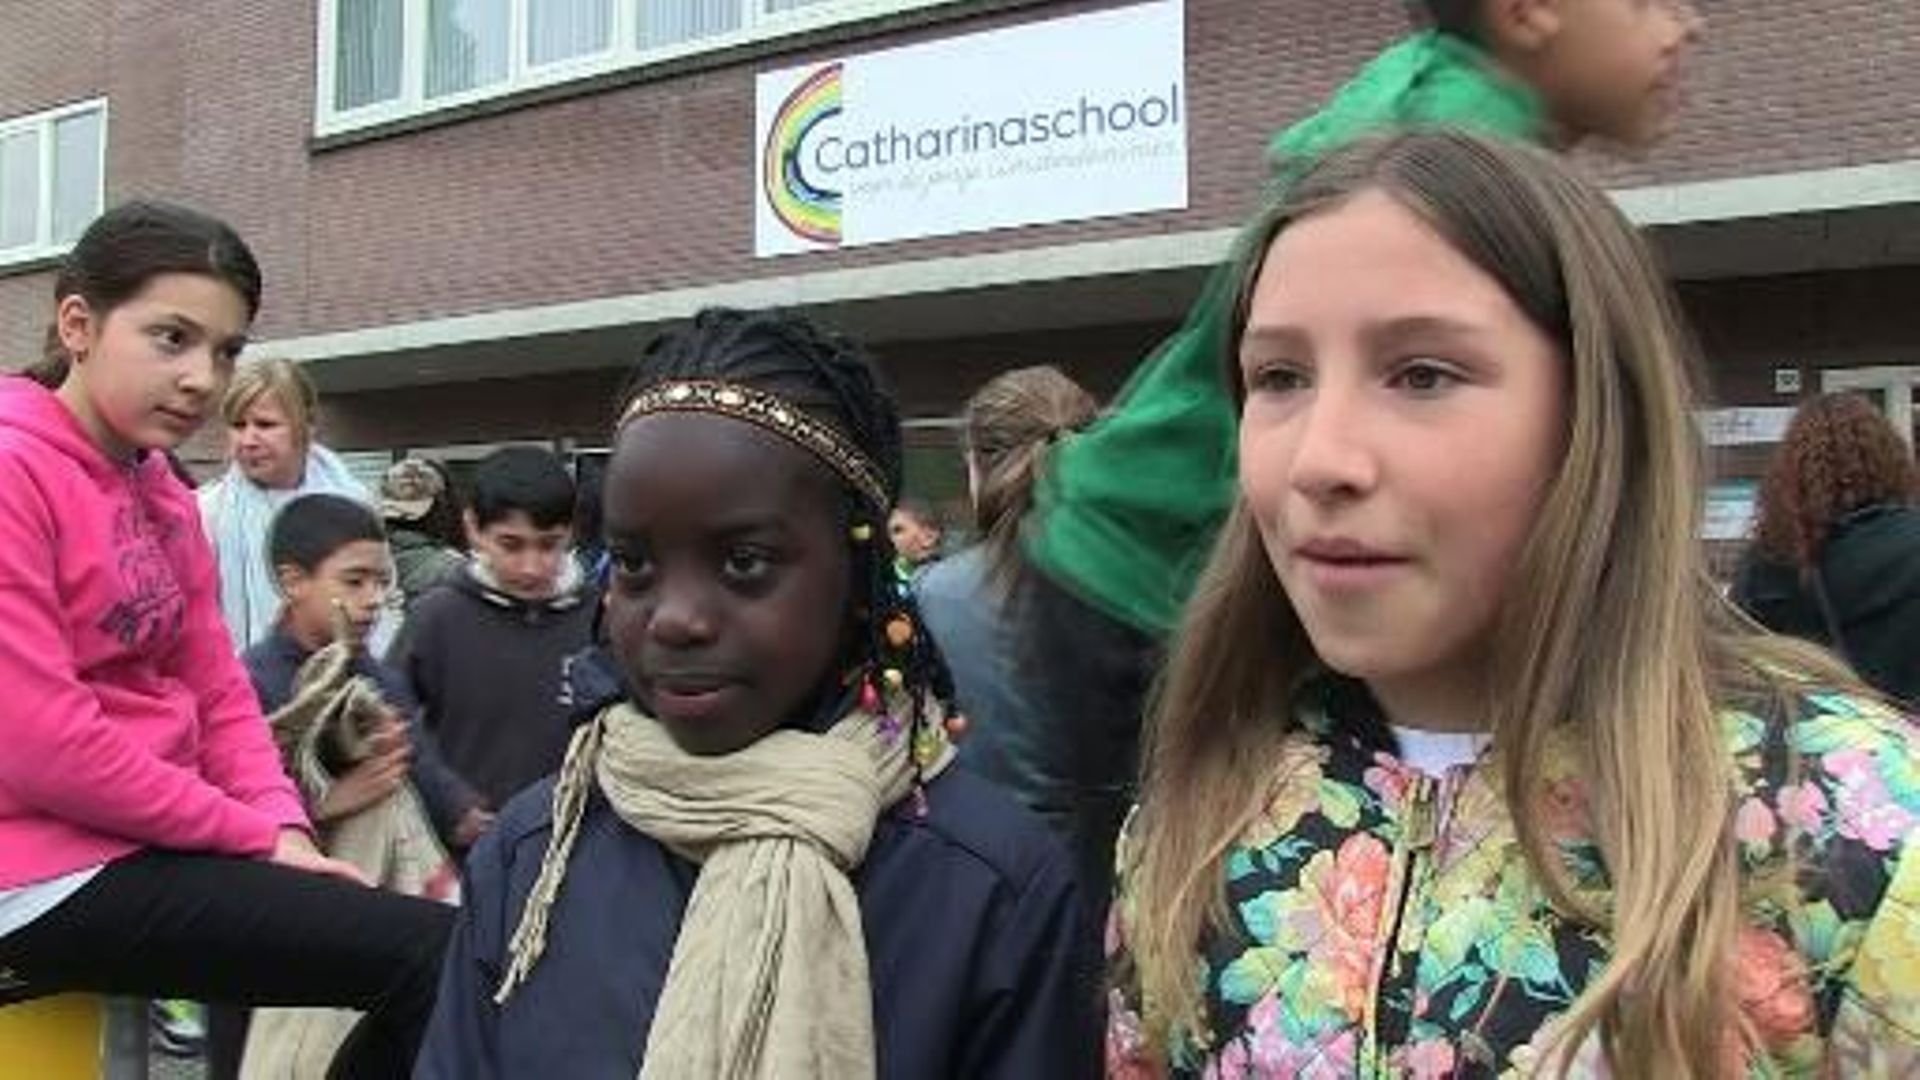 Capture d'écran de deux élèves de l'école Catharina d'Amsterdam, faisant campagne en faveur d'une plus grande mixité culturelle dans leur établissement